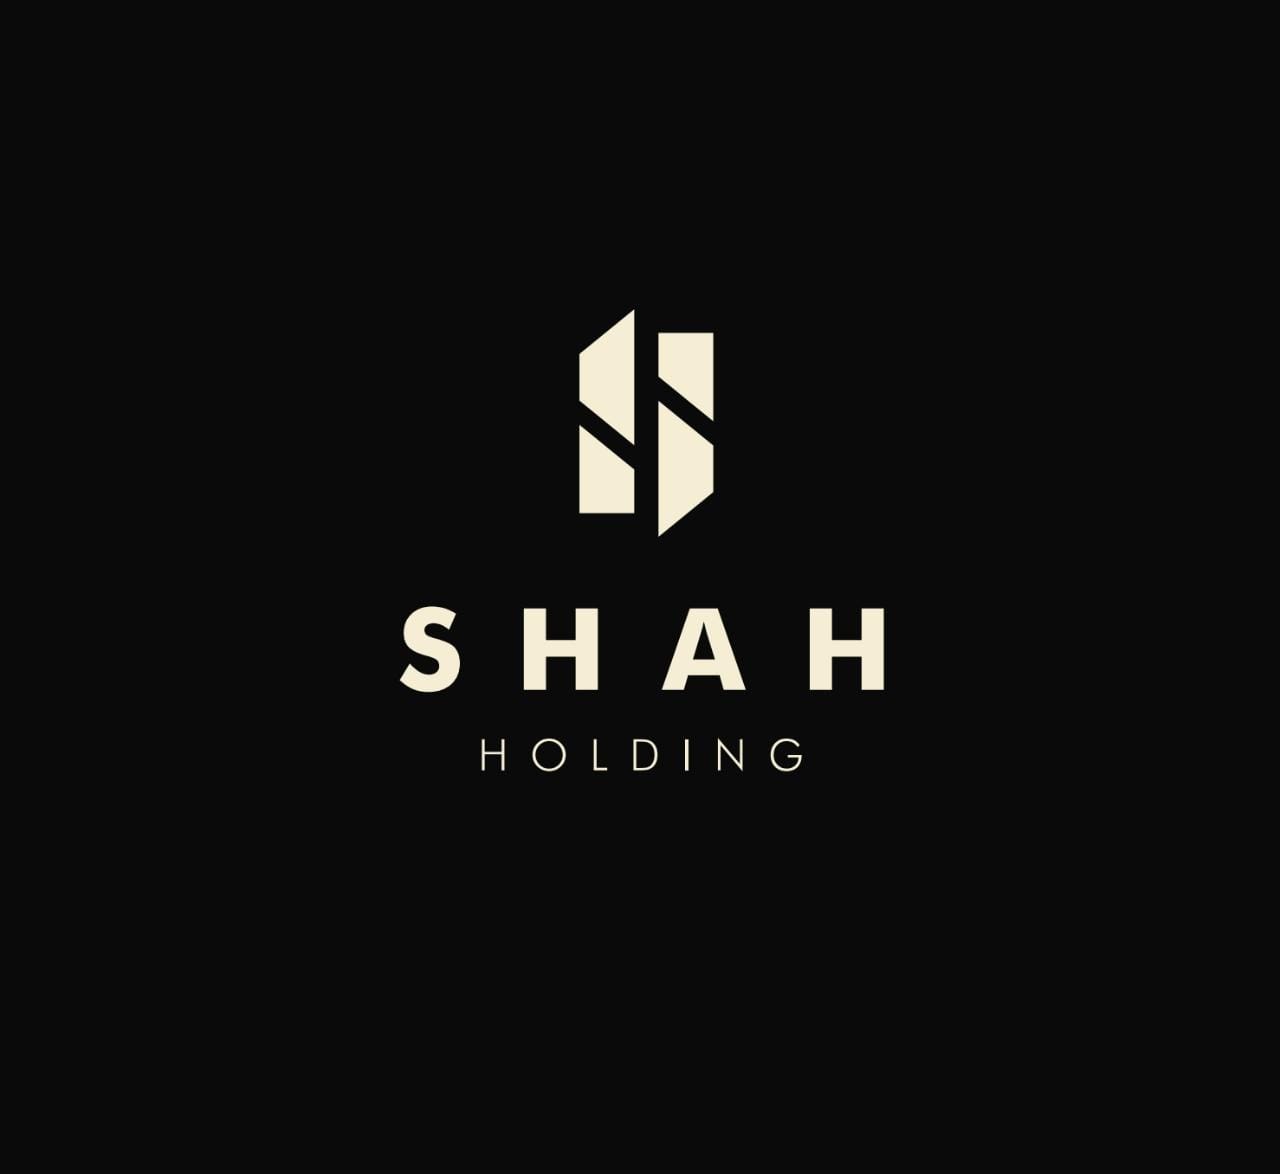 مجموعة شركات شاه شاكر تحتفل بمرور 20 عام على تأسيسها بدون شركاء